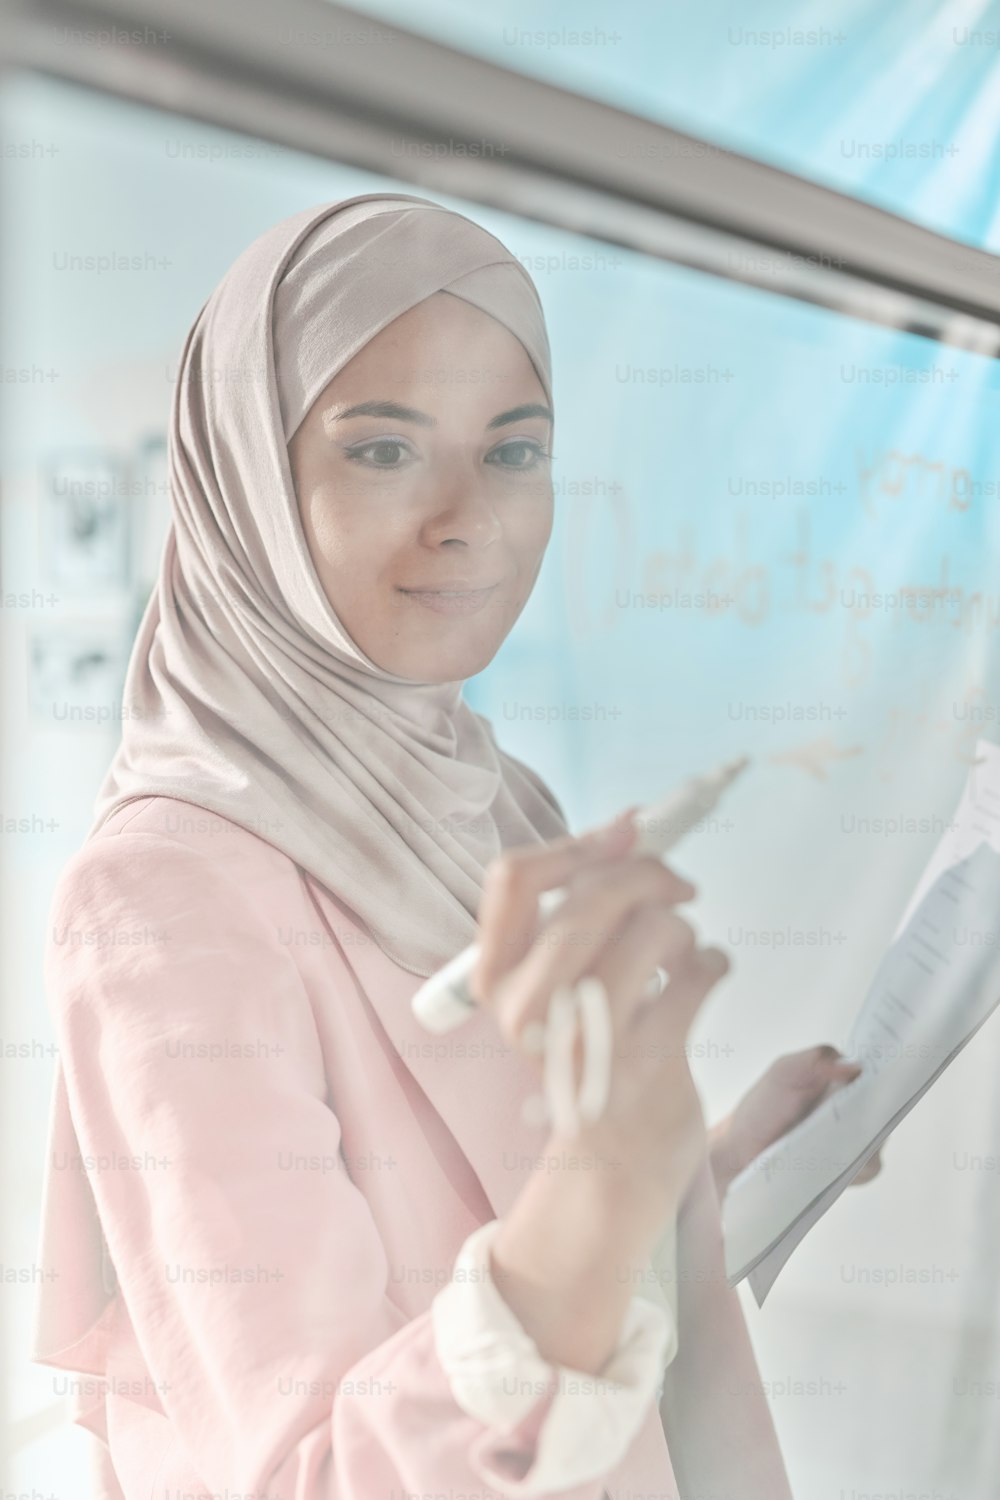 히잡을 쓴 젊은 여성 중개인이 프레젠테이션이나 세미나를 준비하면서 투명판에 형광펜으로 메모를 하고 있다